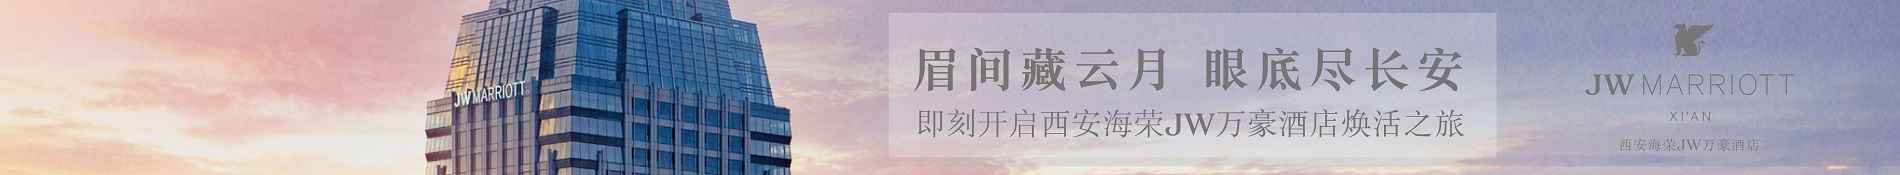 万豪旅享家专属时刻！第二十五届上海国际电影节威斯汀明星小红毯竞拍